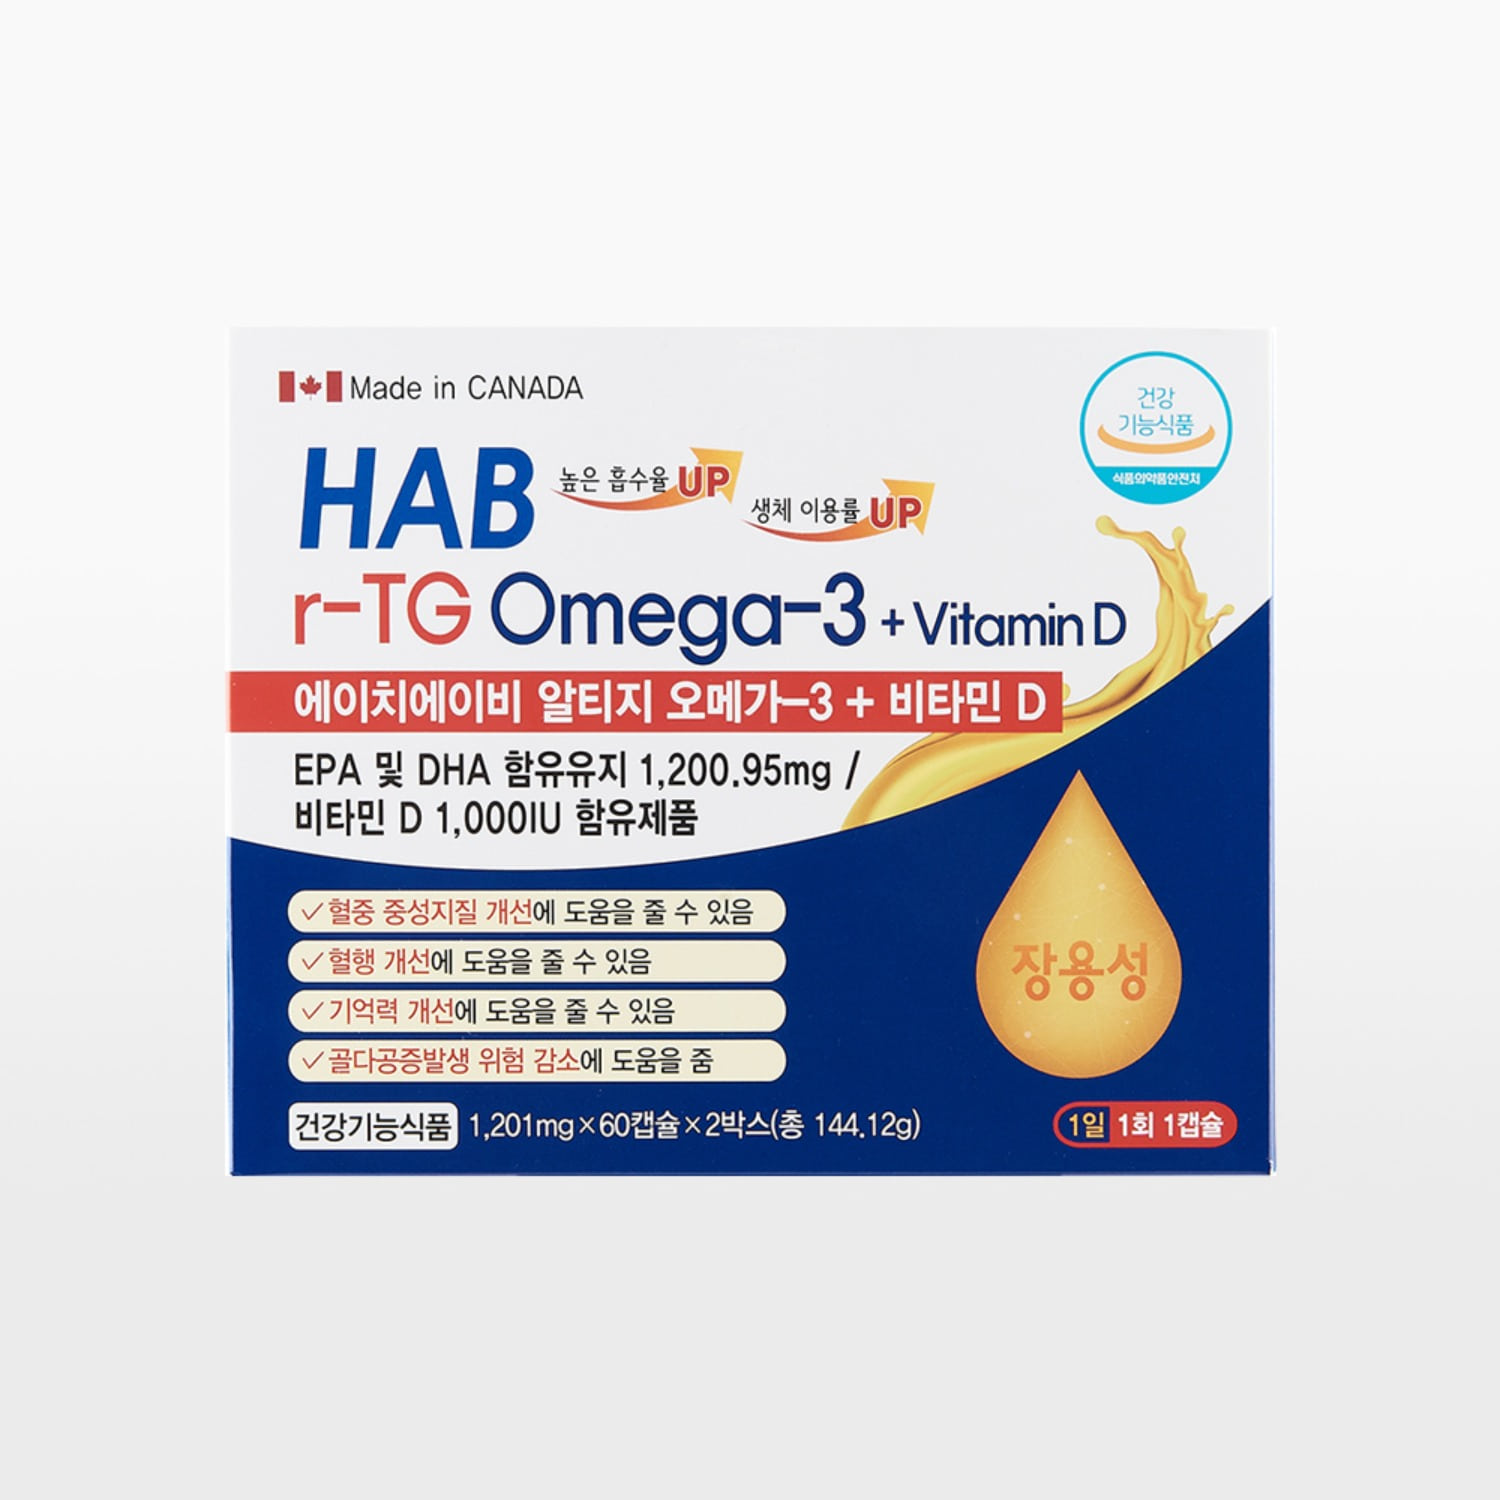 HAB 알티지오메가3 위드비타민D (4개월분)